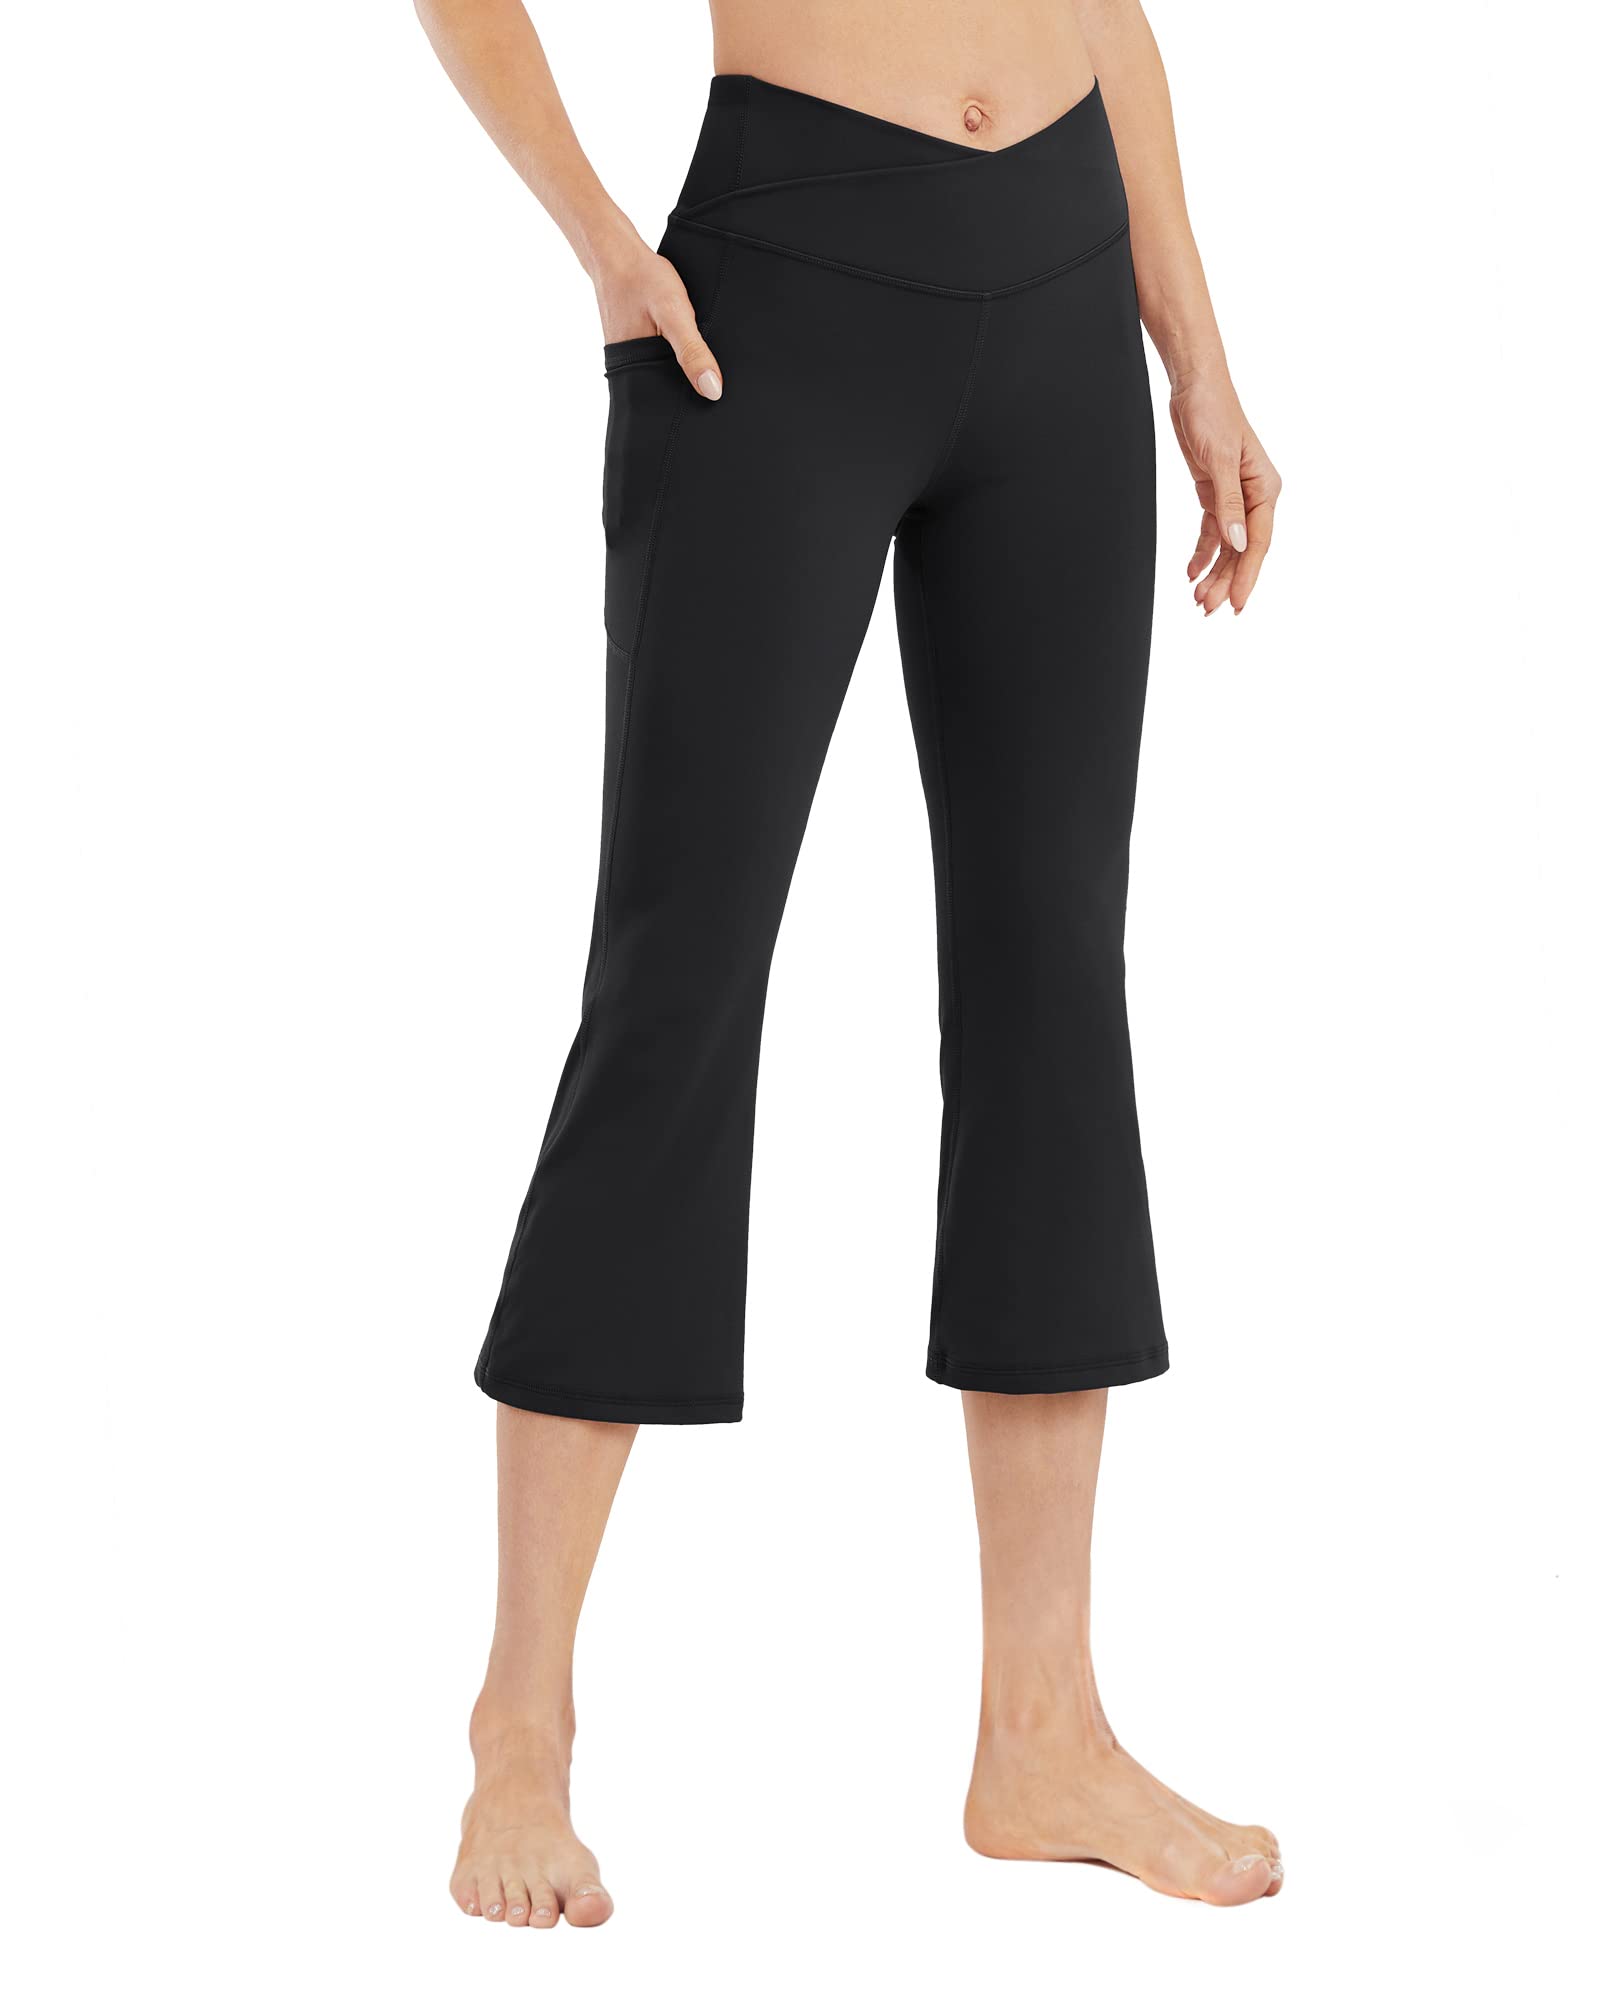 G4Free Women's Capri Pants  Casual Trendy Bell Bottom Leggings